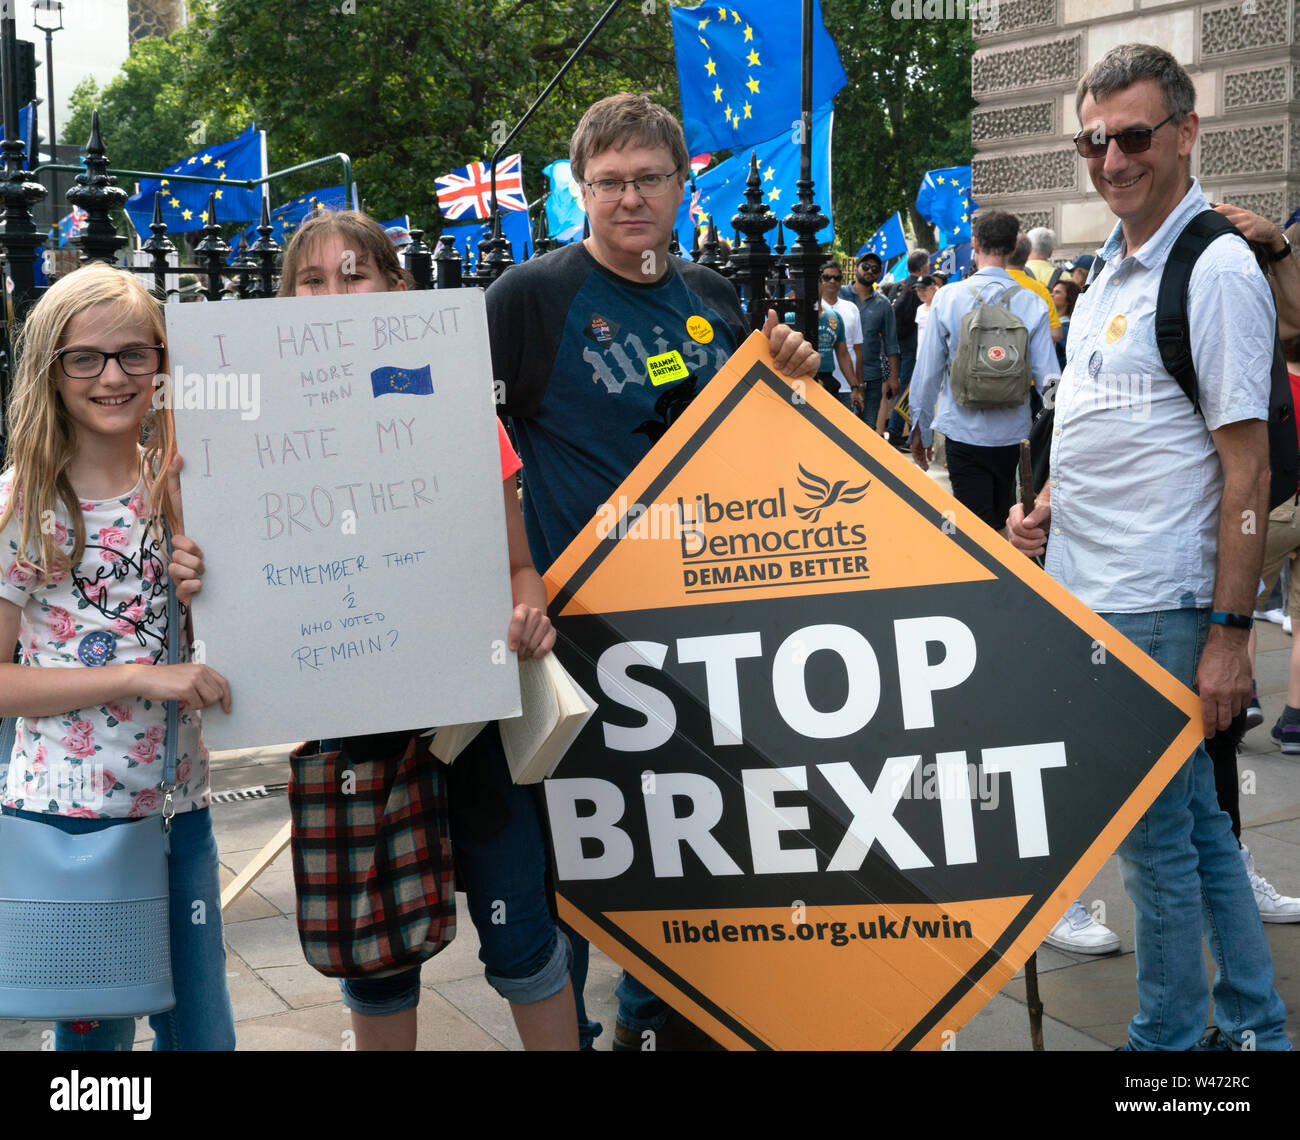 Londres, Royaume-Uni. 20 juillet 2019 : Des manifestants anti Brexit se rassembler à la place du Parlement à la suite d'une marche à travers Londres. Il a été estimé que 1 millions de personnes venus de toutes les régions du pays Crédit : Bridget Catterall/Alamy Live News Crédit : Bridget Catterall/Alamy Live News Banque D'Images